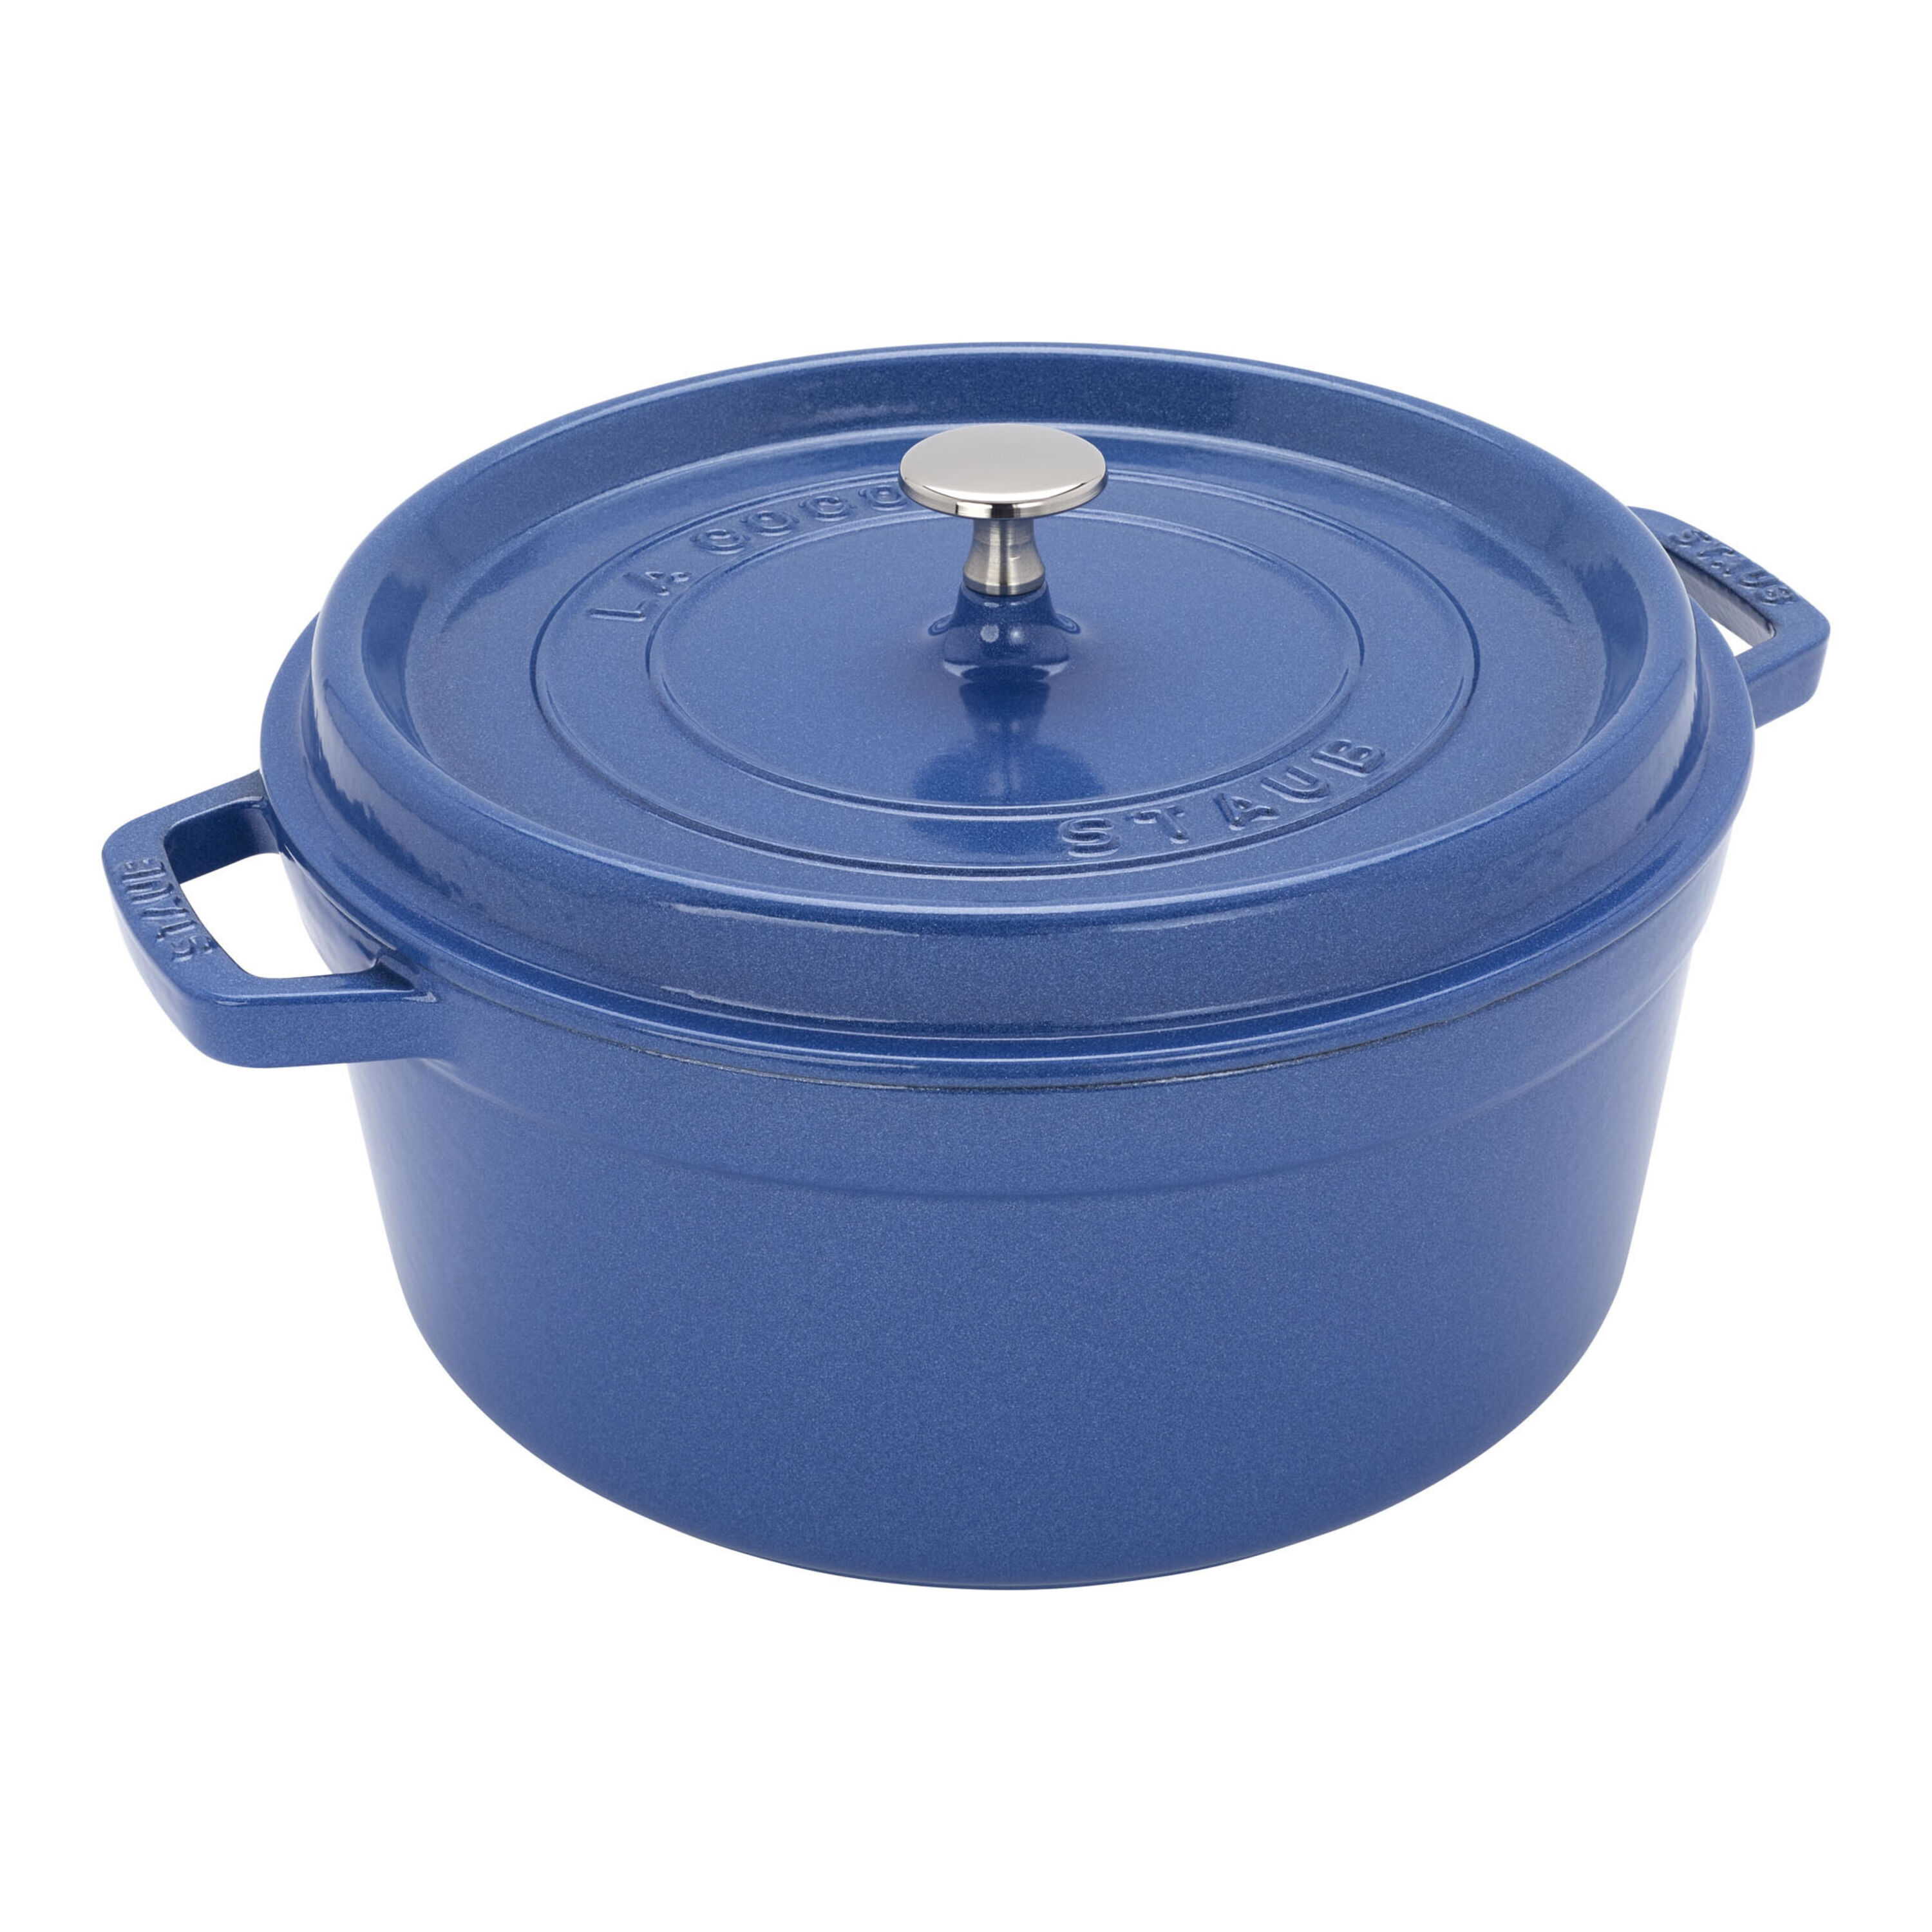 Cast Iron Cookware 5.5 Quart Enameled Dutch Oven W/ Lid Blue